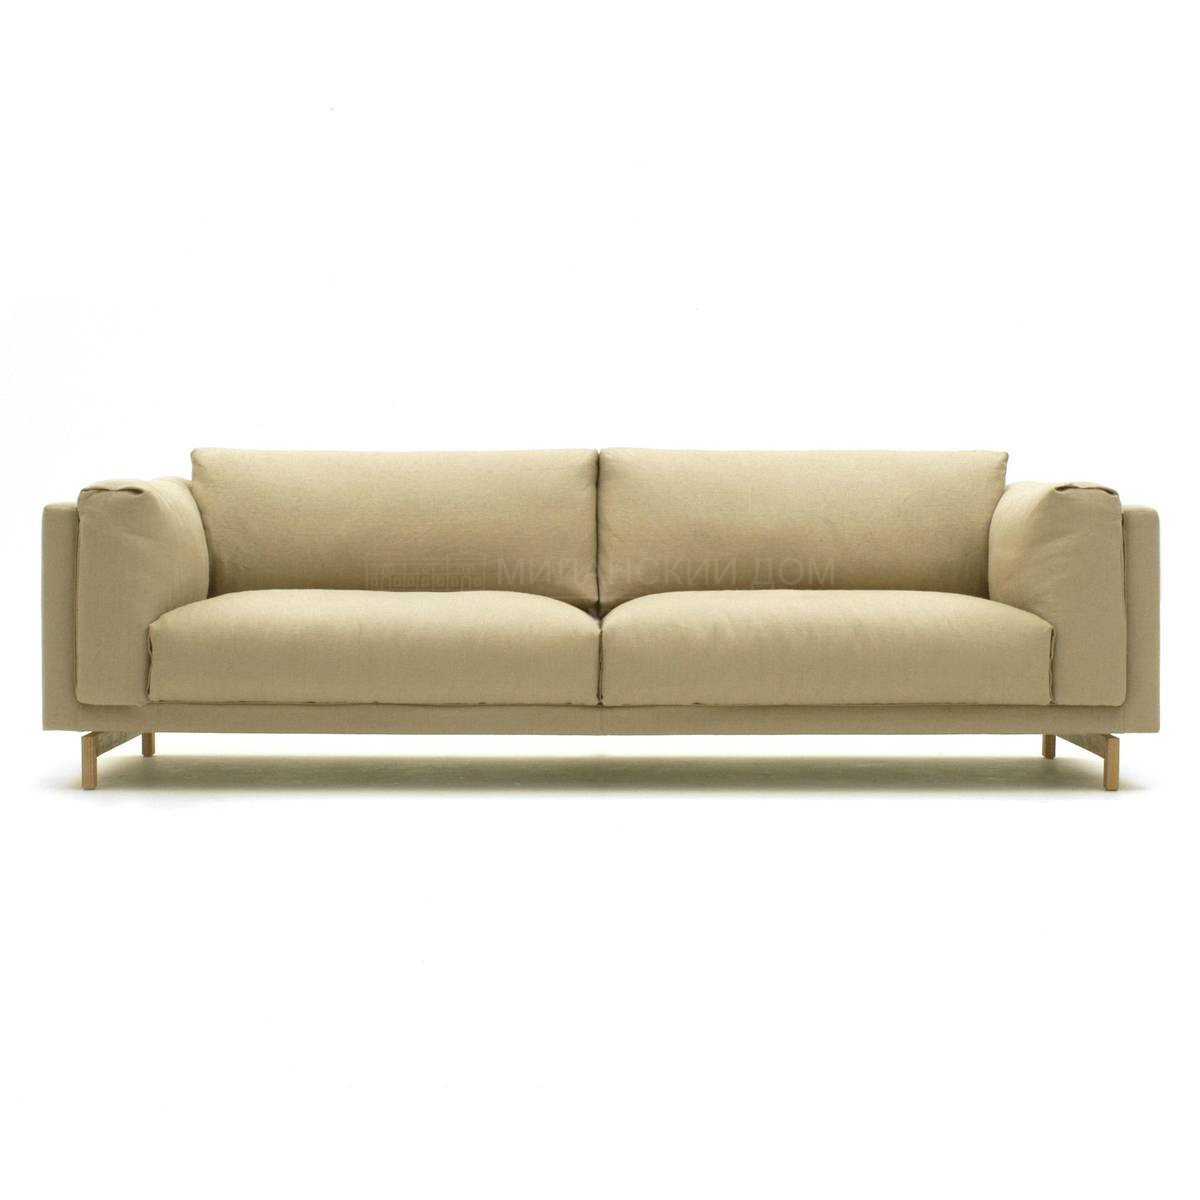 Прямой диван Family sofa из Италии фабрики LIVING DIVANI